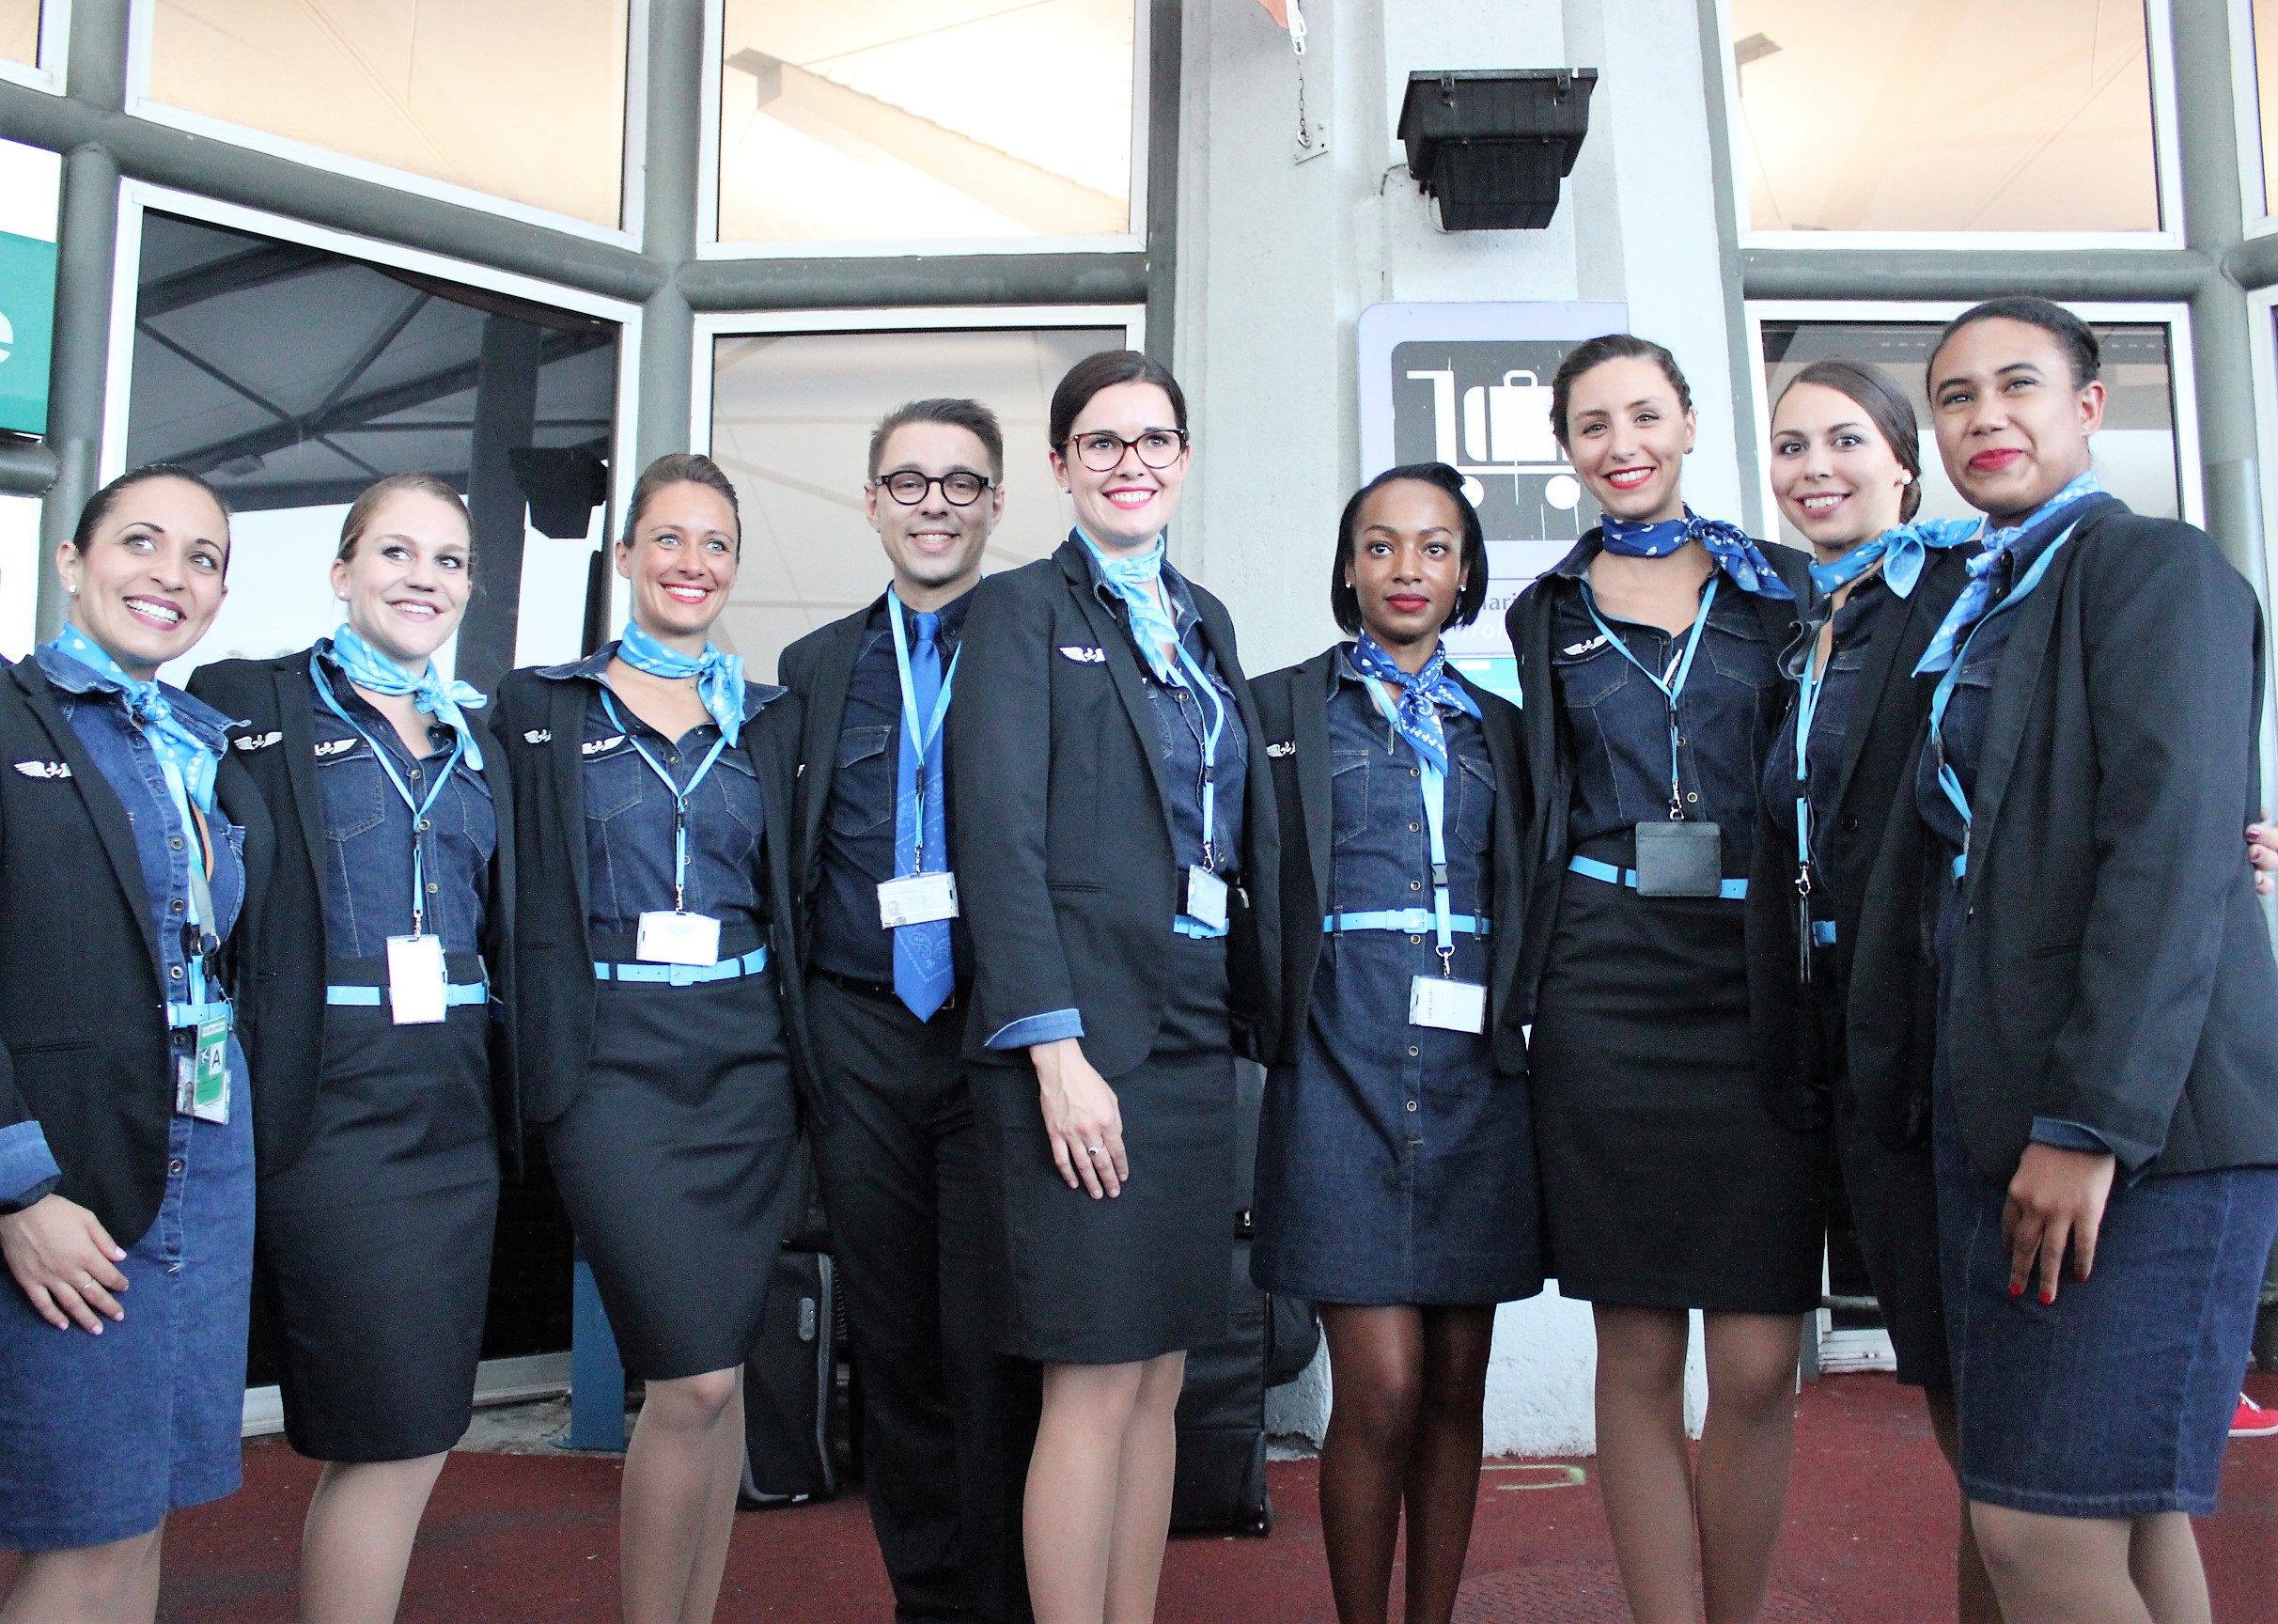 Journée internationale des droits des femmes : La compagnie aérienne French Bee est « engagée dans une politique de non-discrimination »